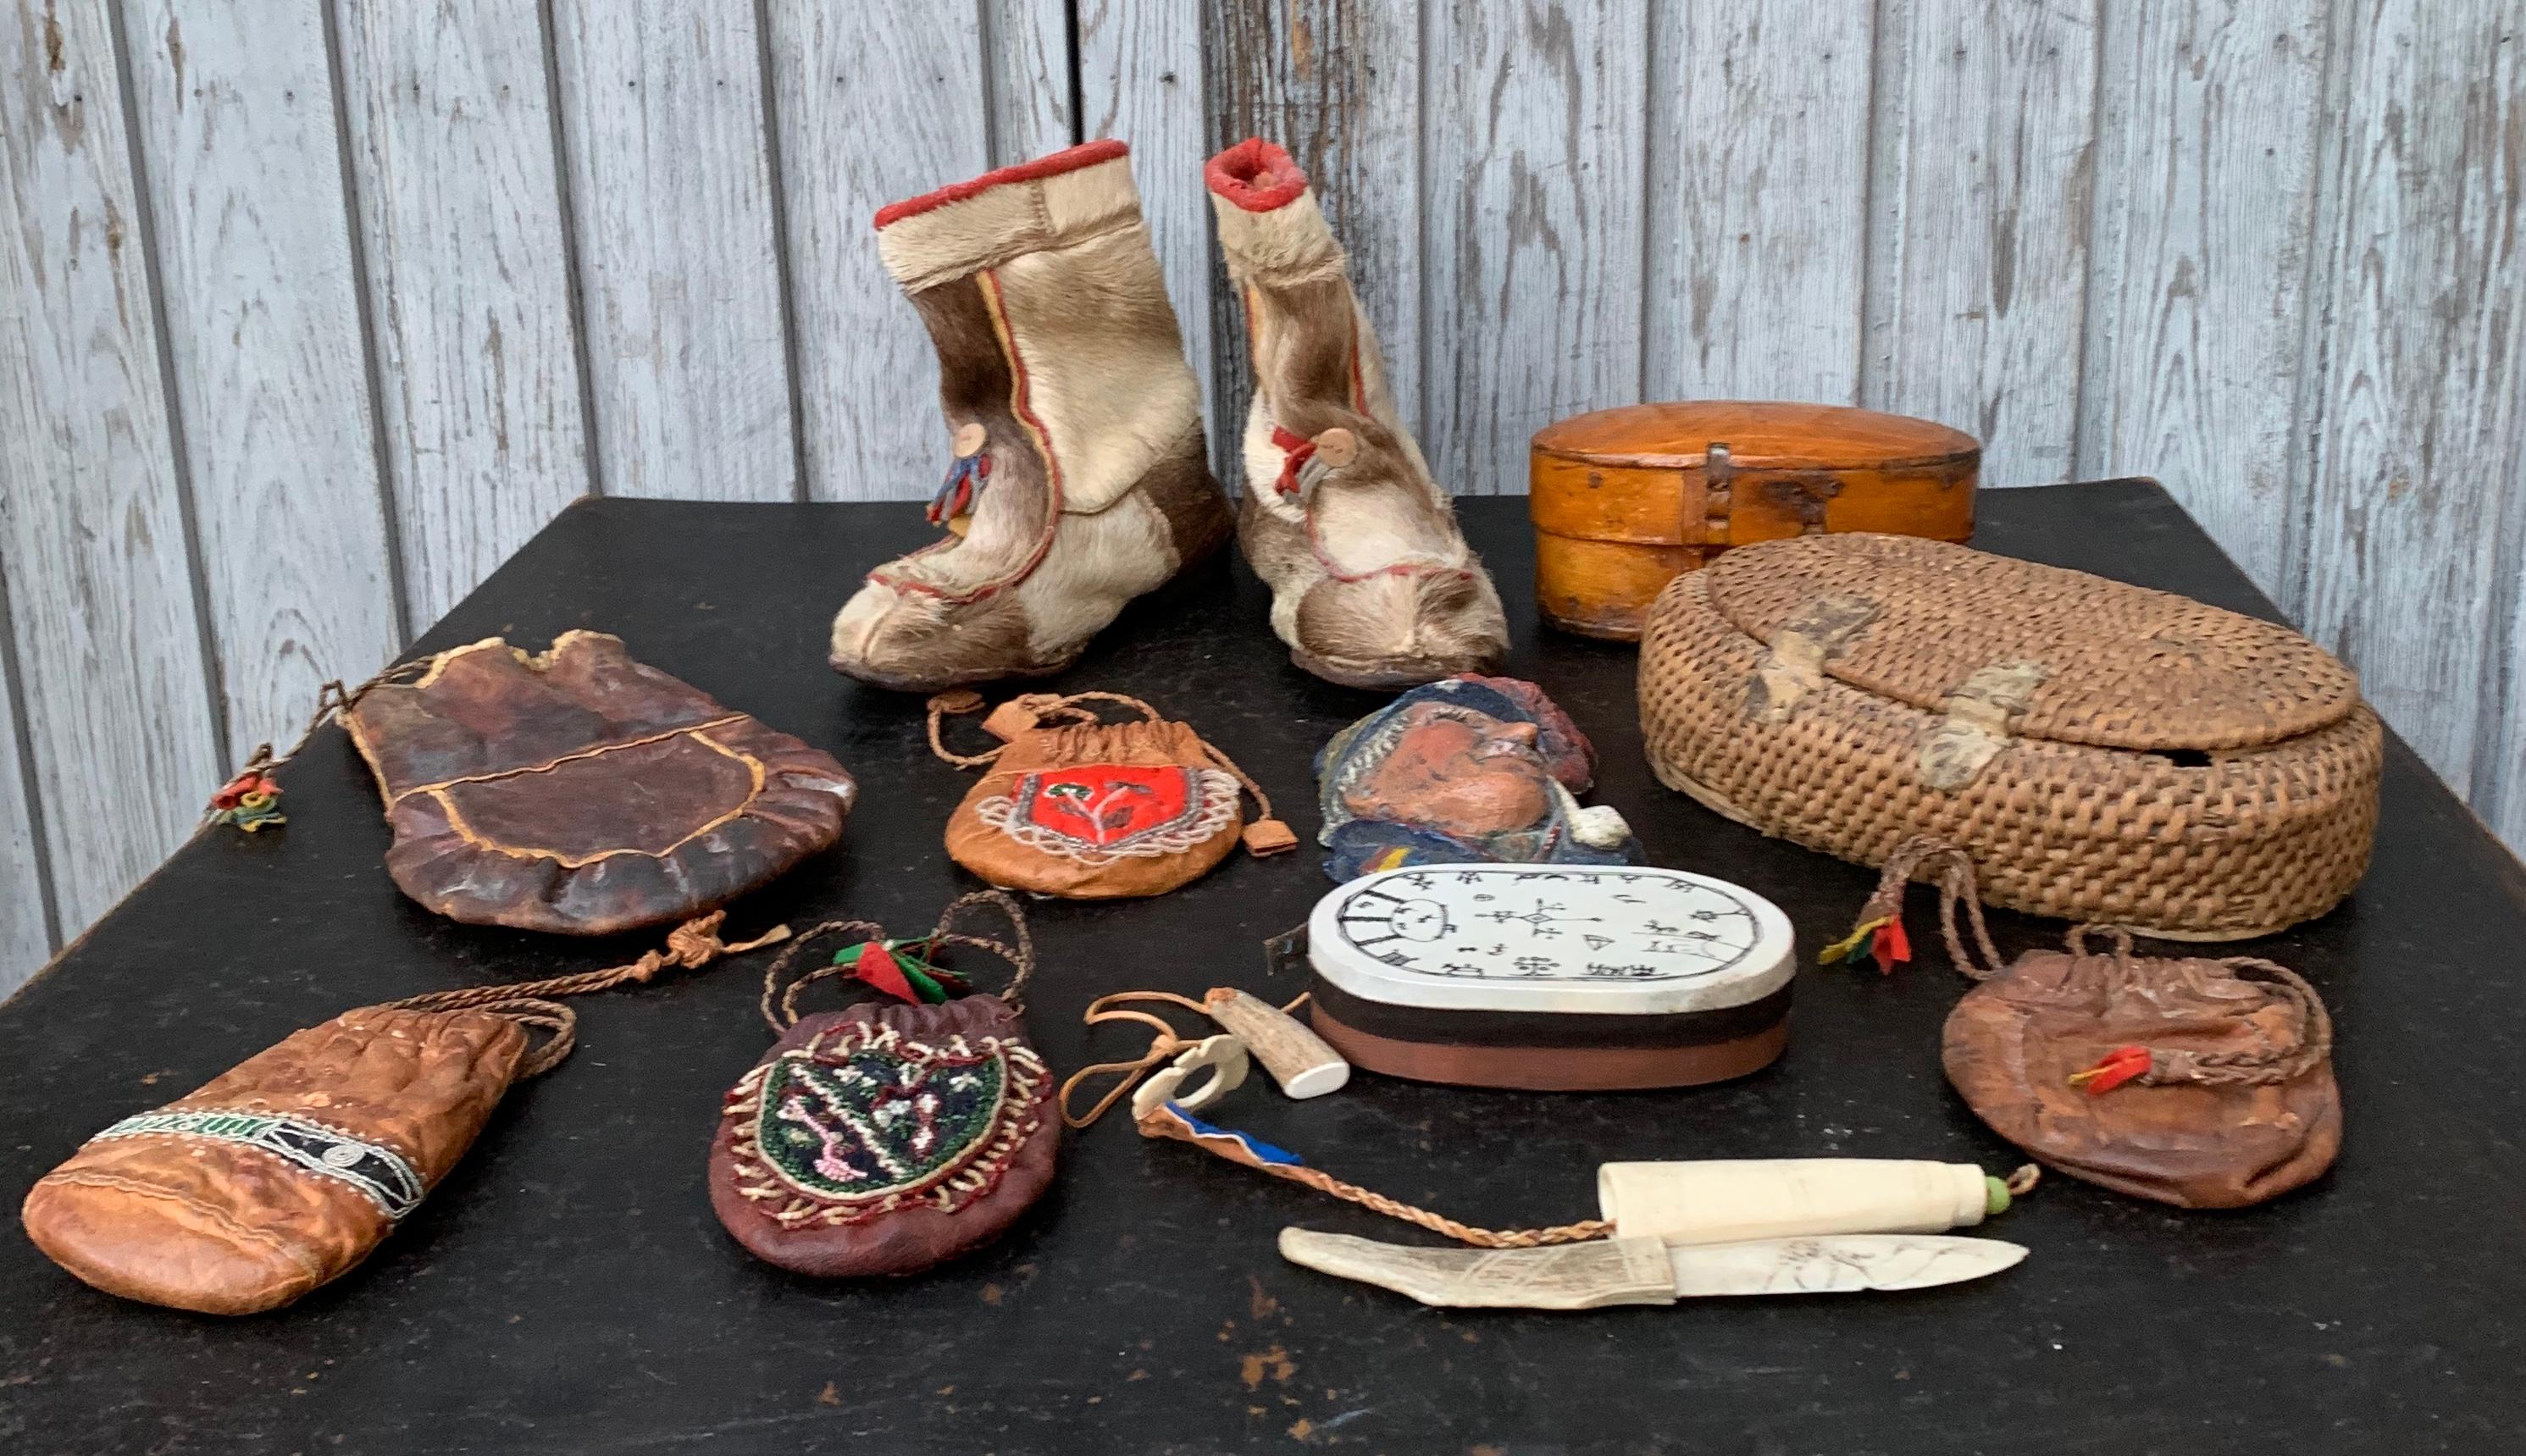 sami artifacts